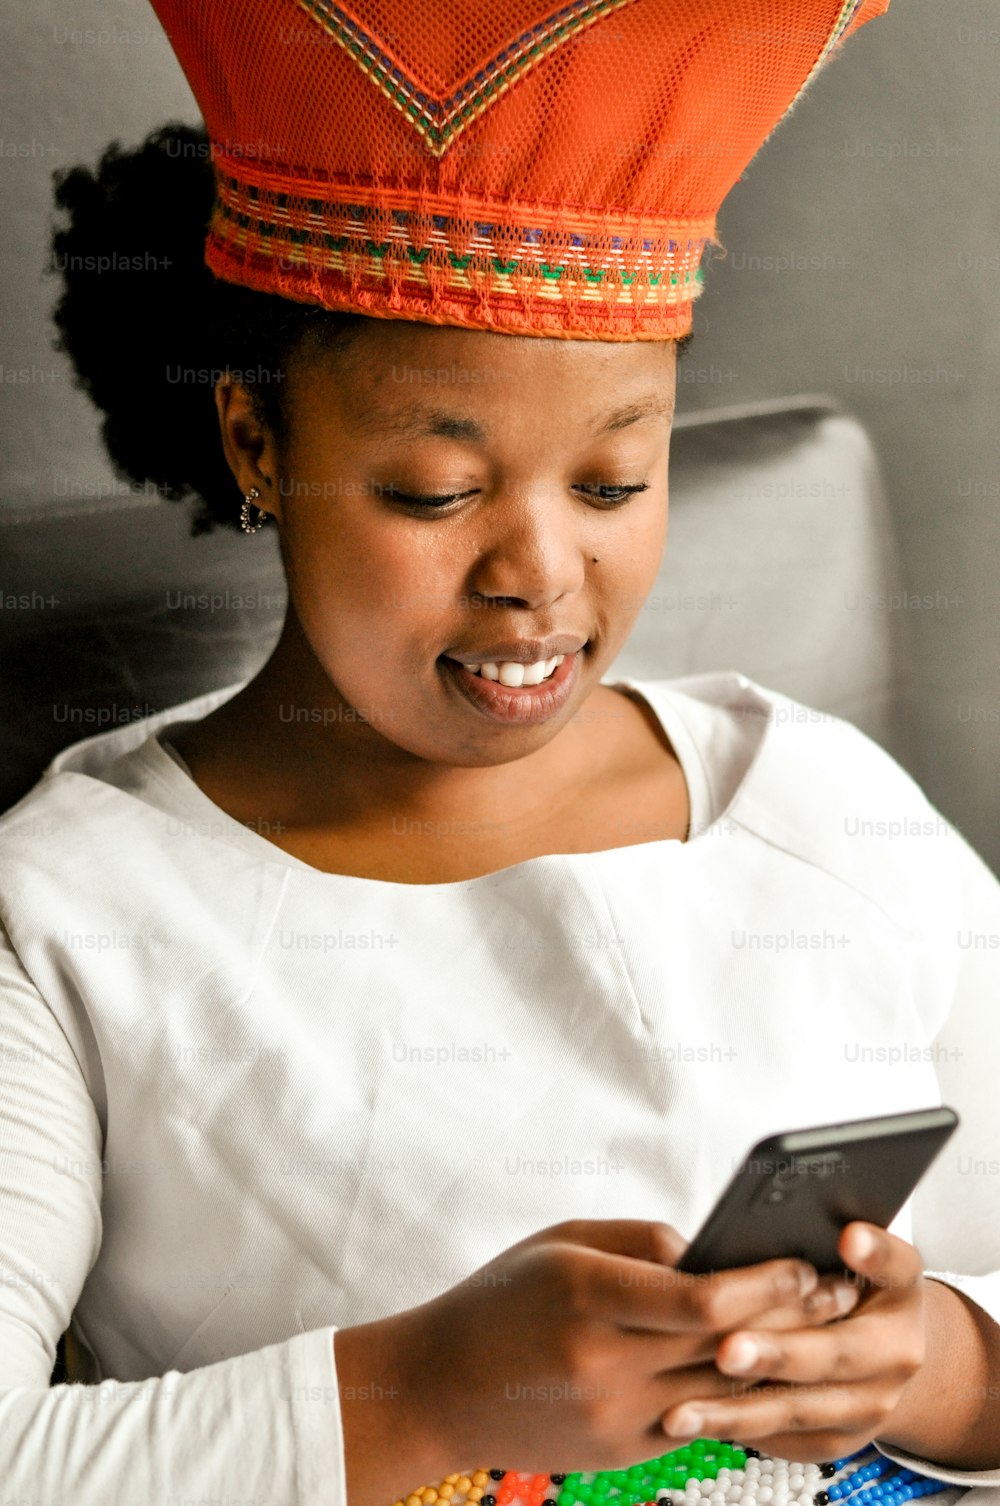 Una donna in un cappello rosso che guarda un telefono cellulare